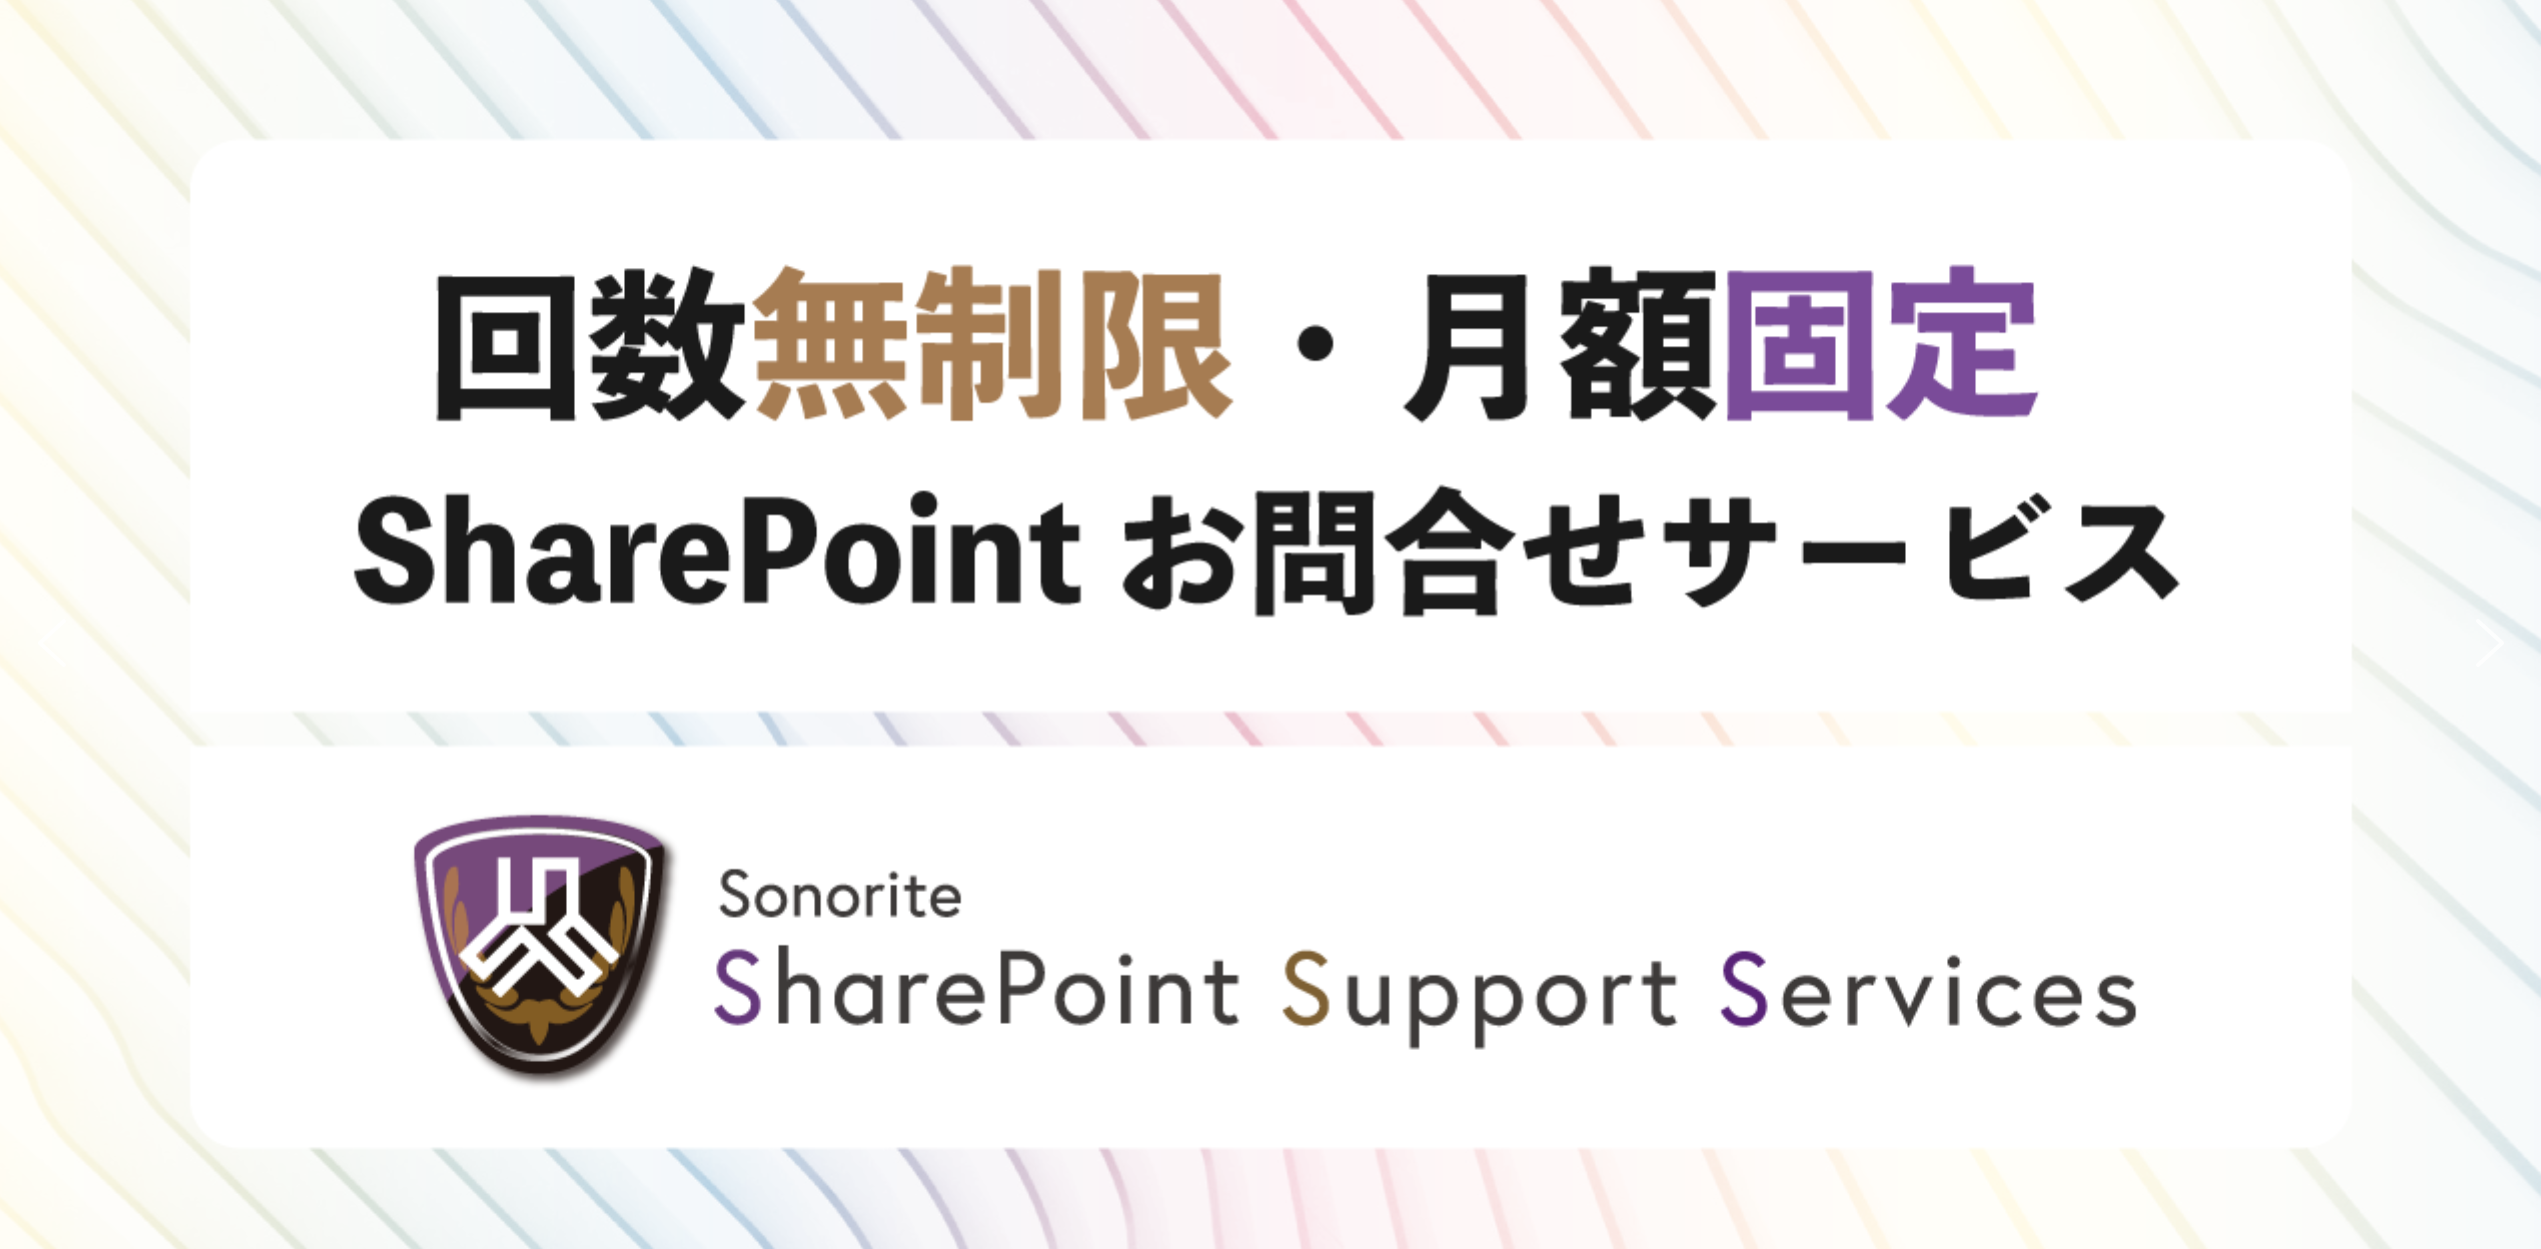 初めまして！SharePointサポートサービス担当です